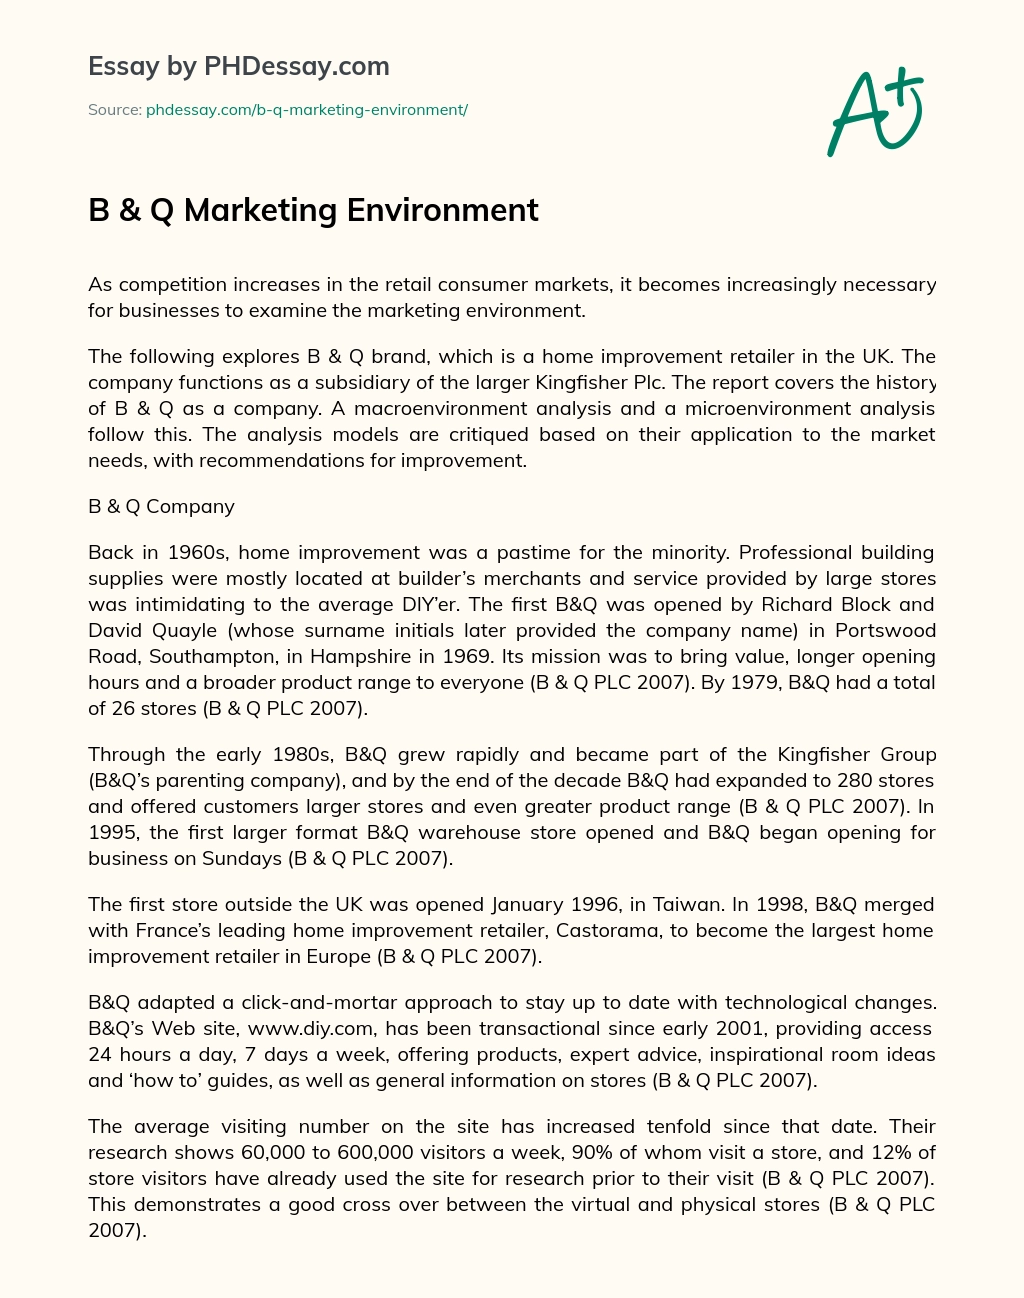 B & Q Marketing Environment essay